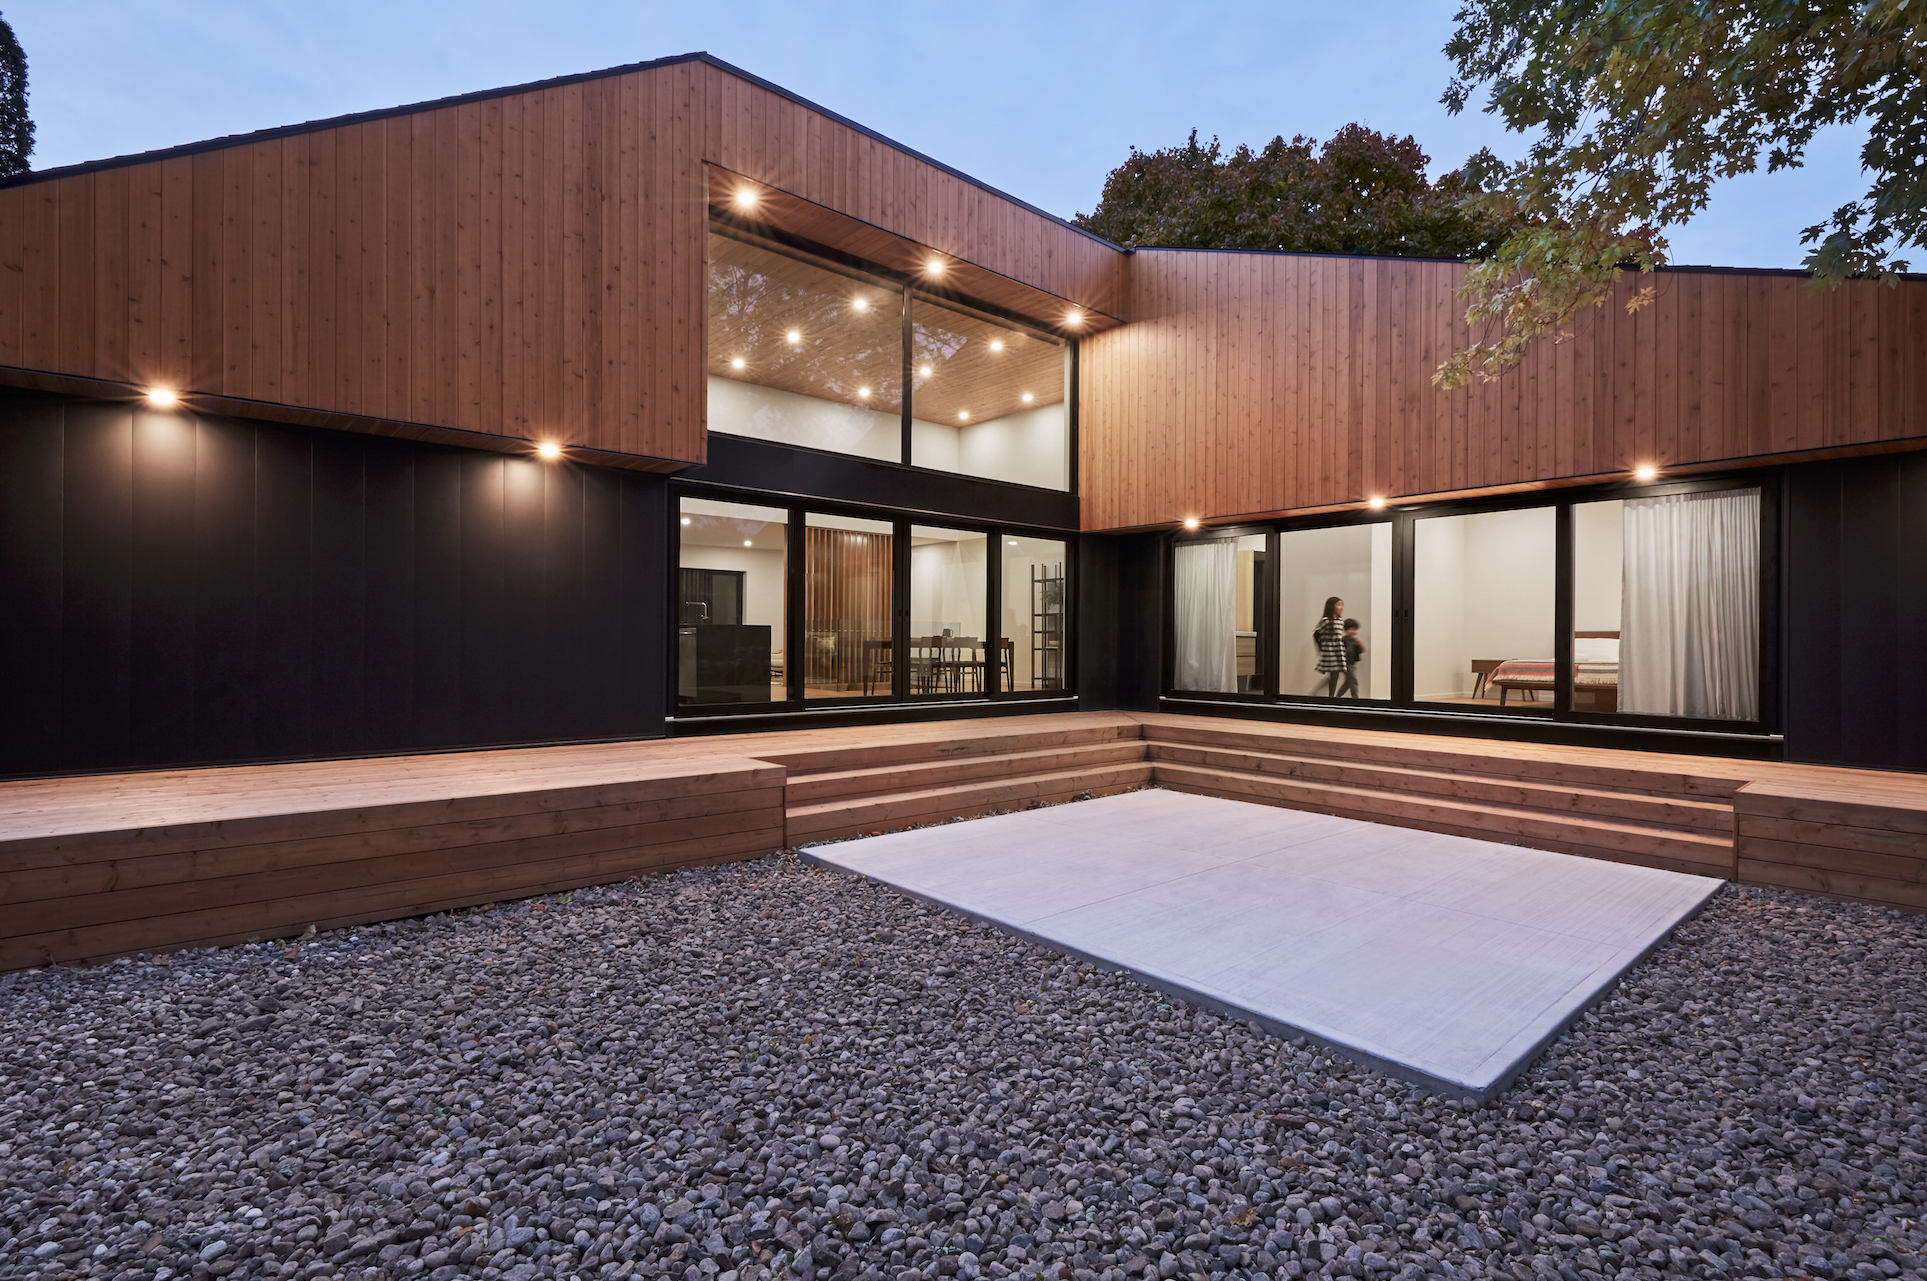 Una casa de diseño contemporáneo diseñada para ser un santuario, un lugar de ensueño